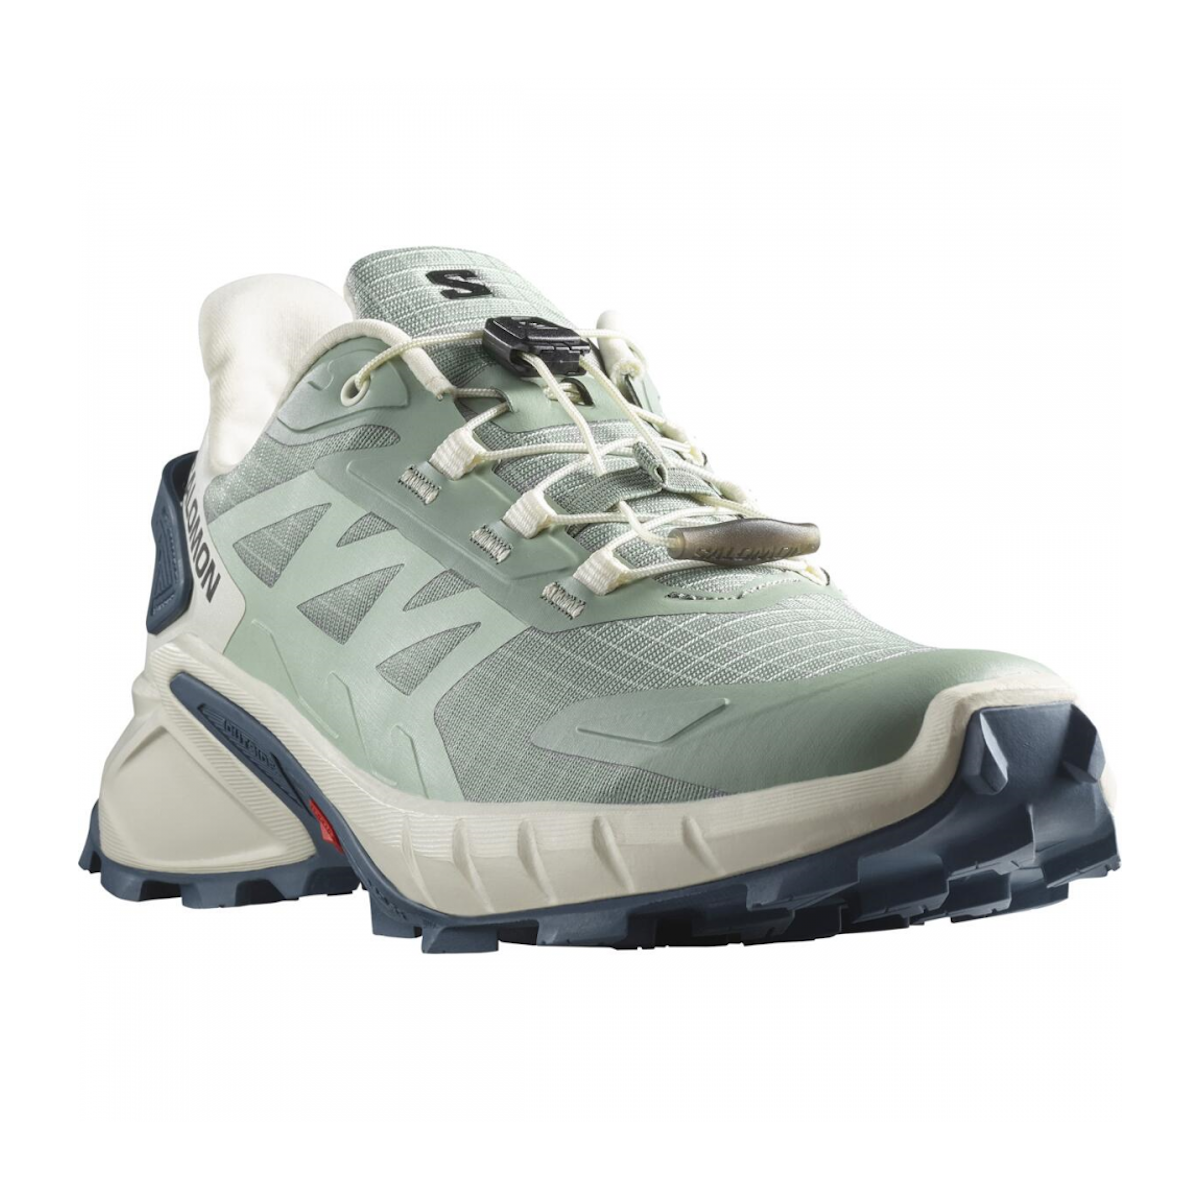 SALOMON SUPERCROSS 4 W trail running shoes - light green/white/blue